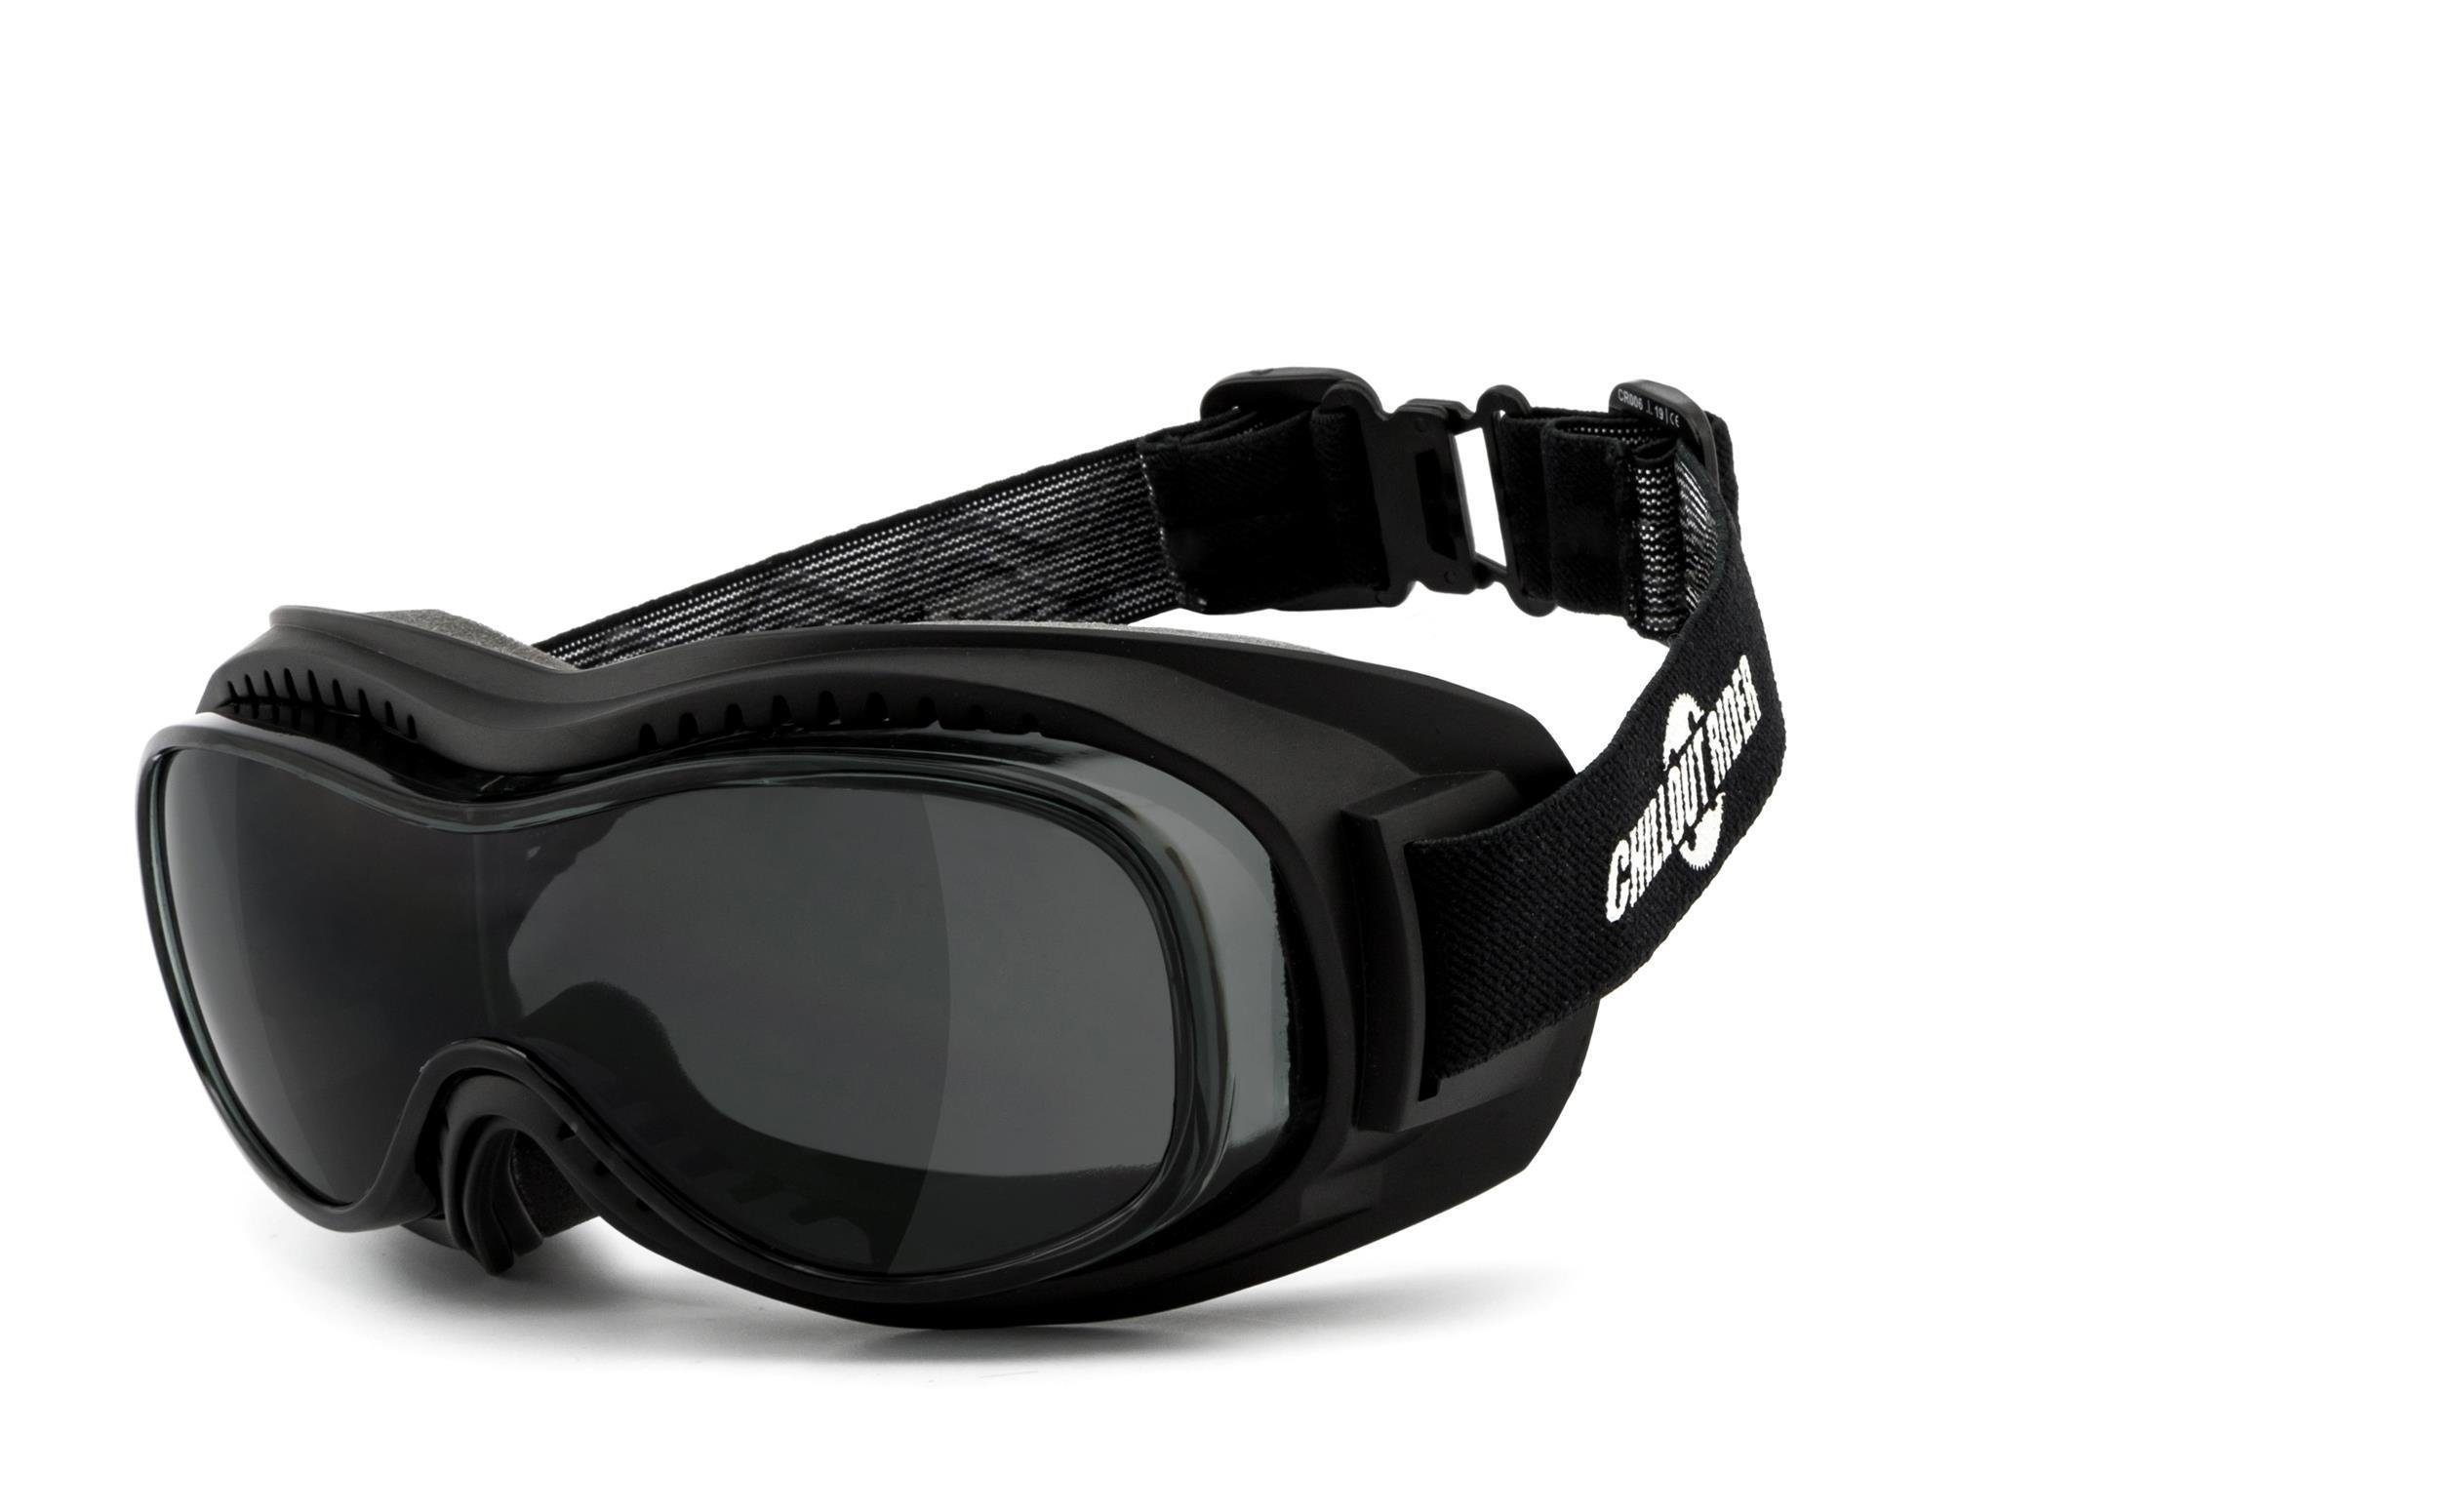 CR006 Brillenträger Sonnenbrille Chillout geeignet Rider ÜBERBRILLE, für